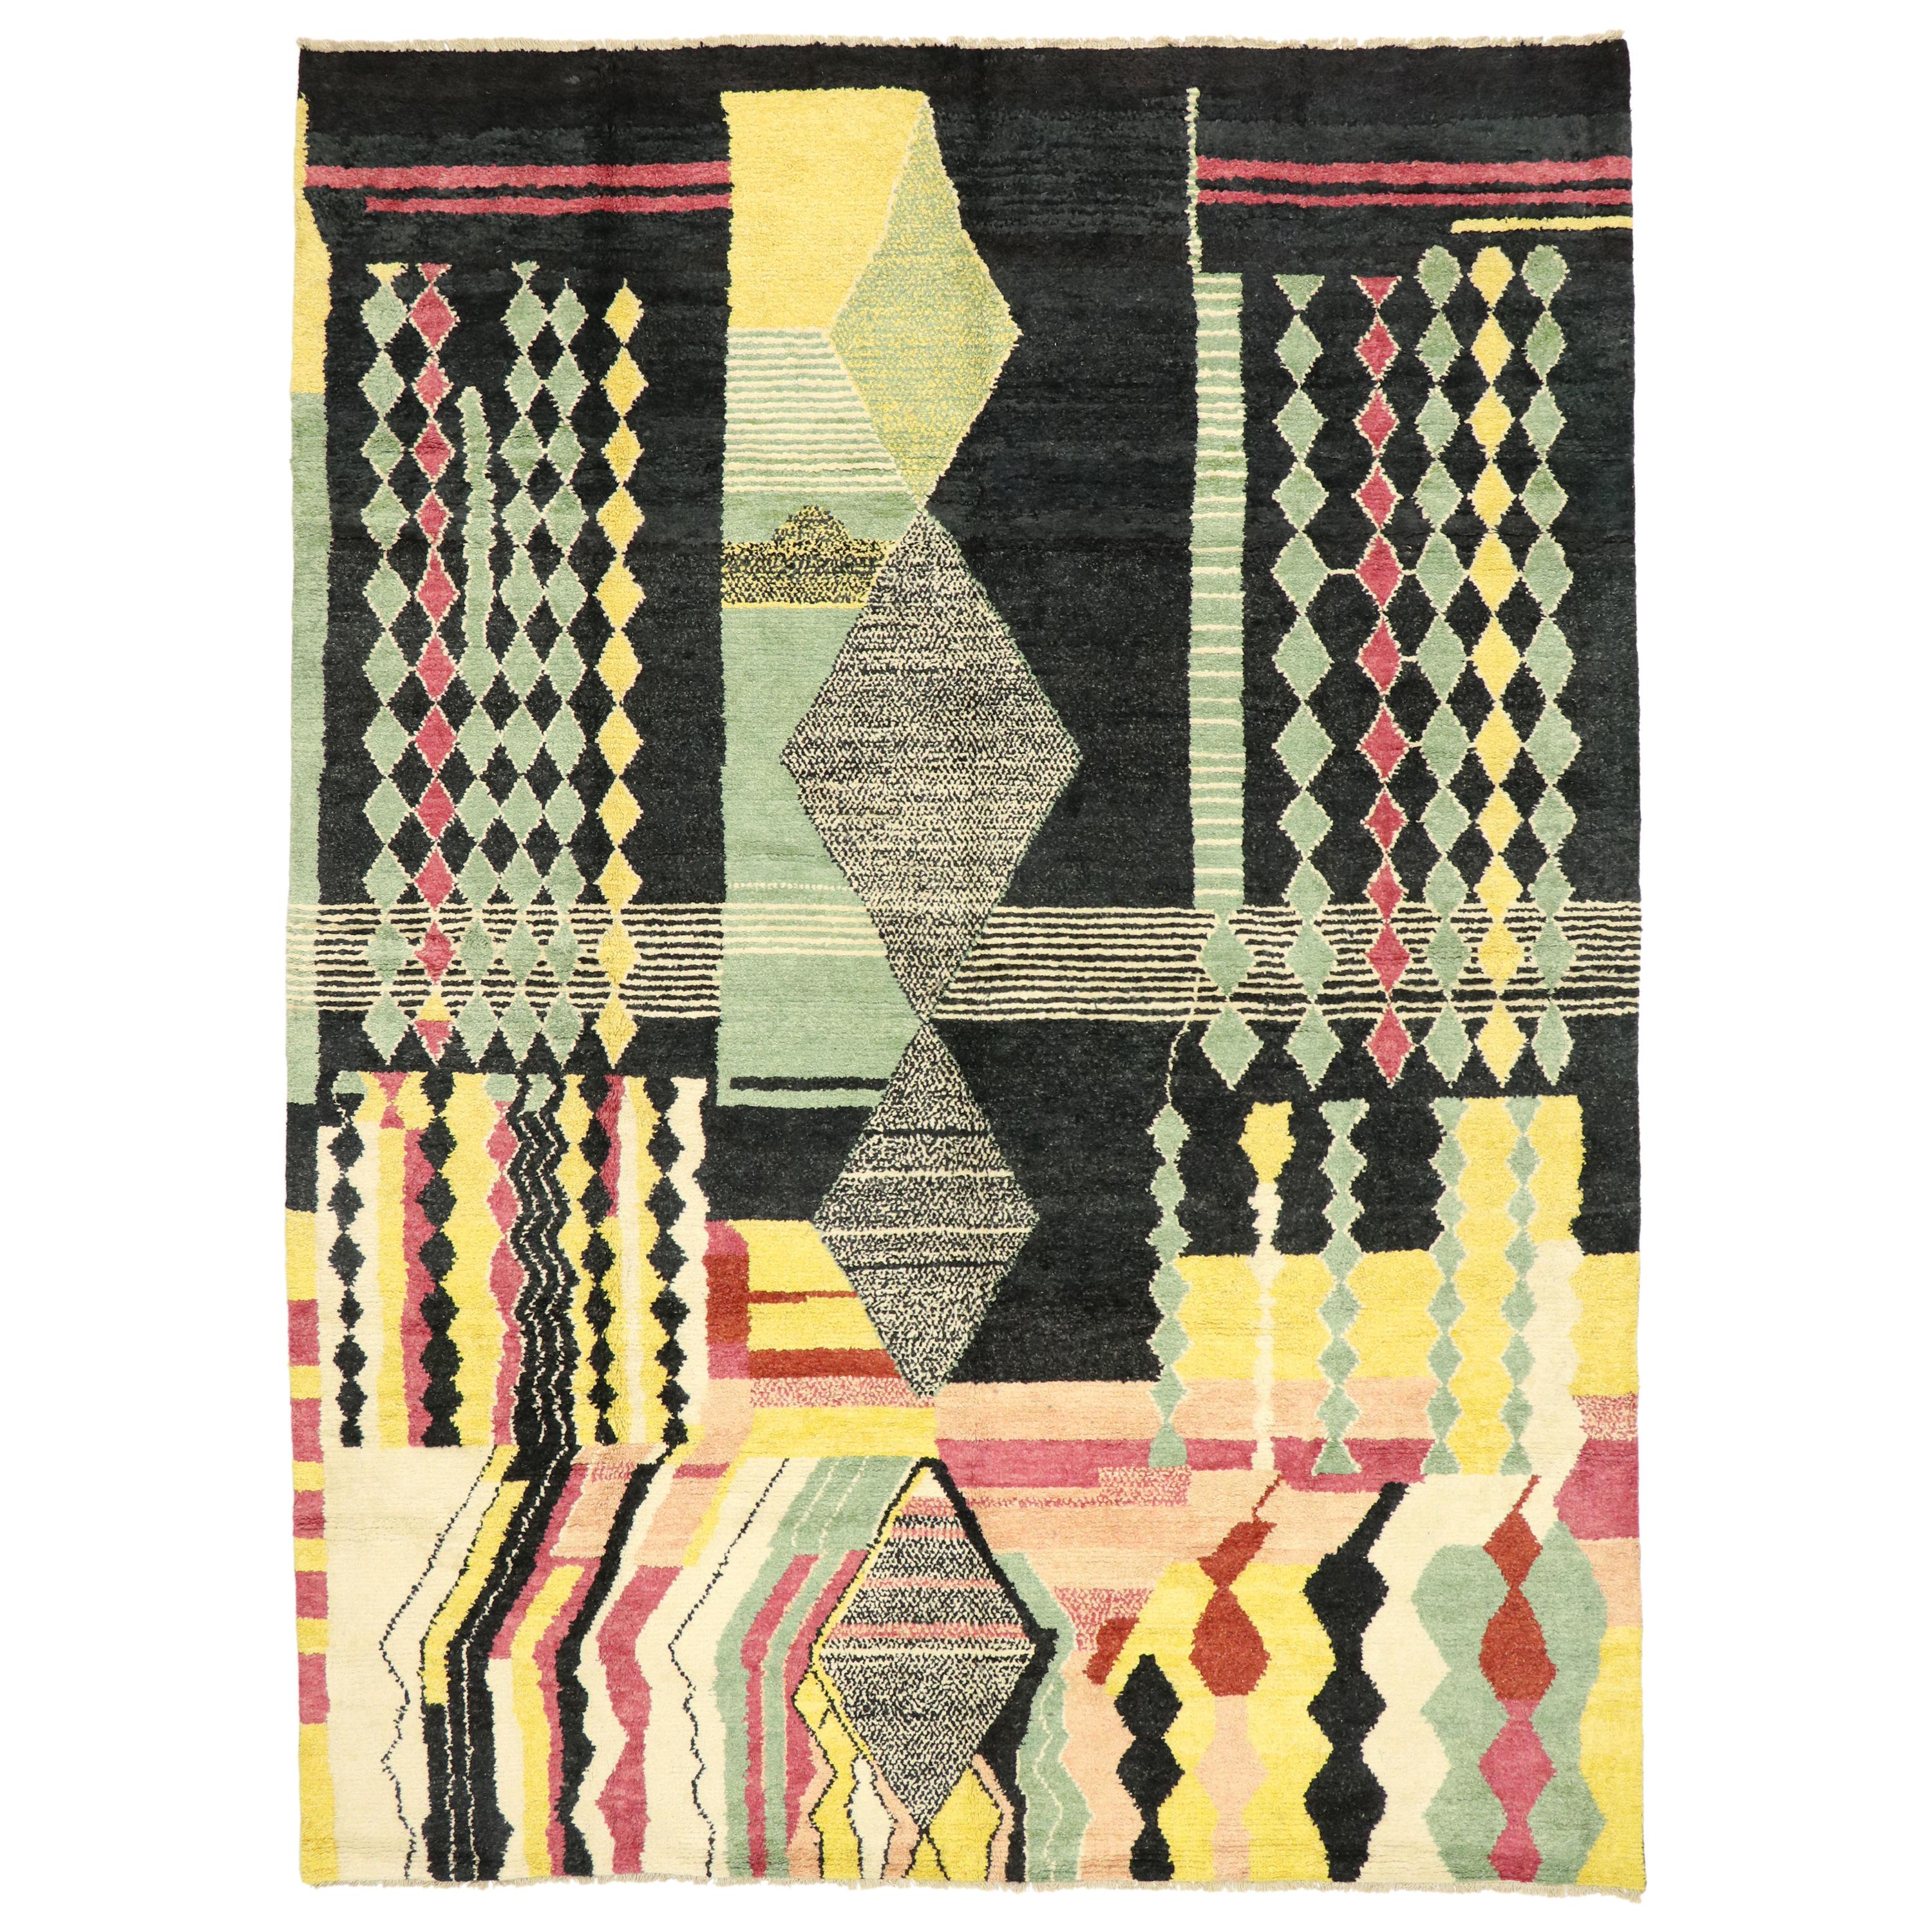 Nouveau tapis marocain contemporain avec style expressionniste abstrait postmoderne